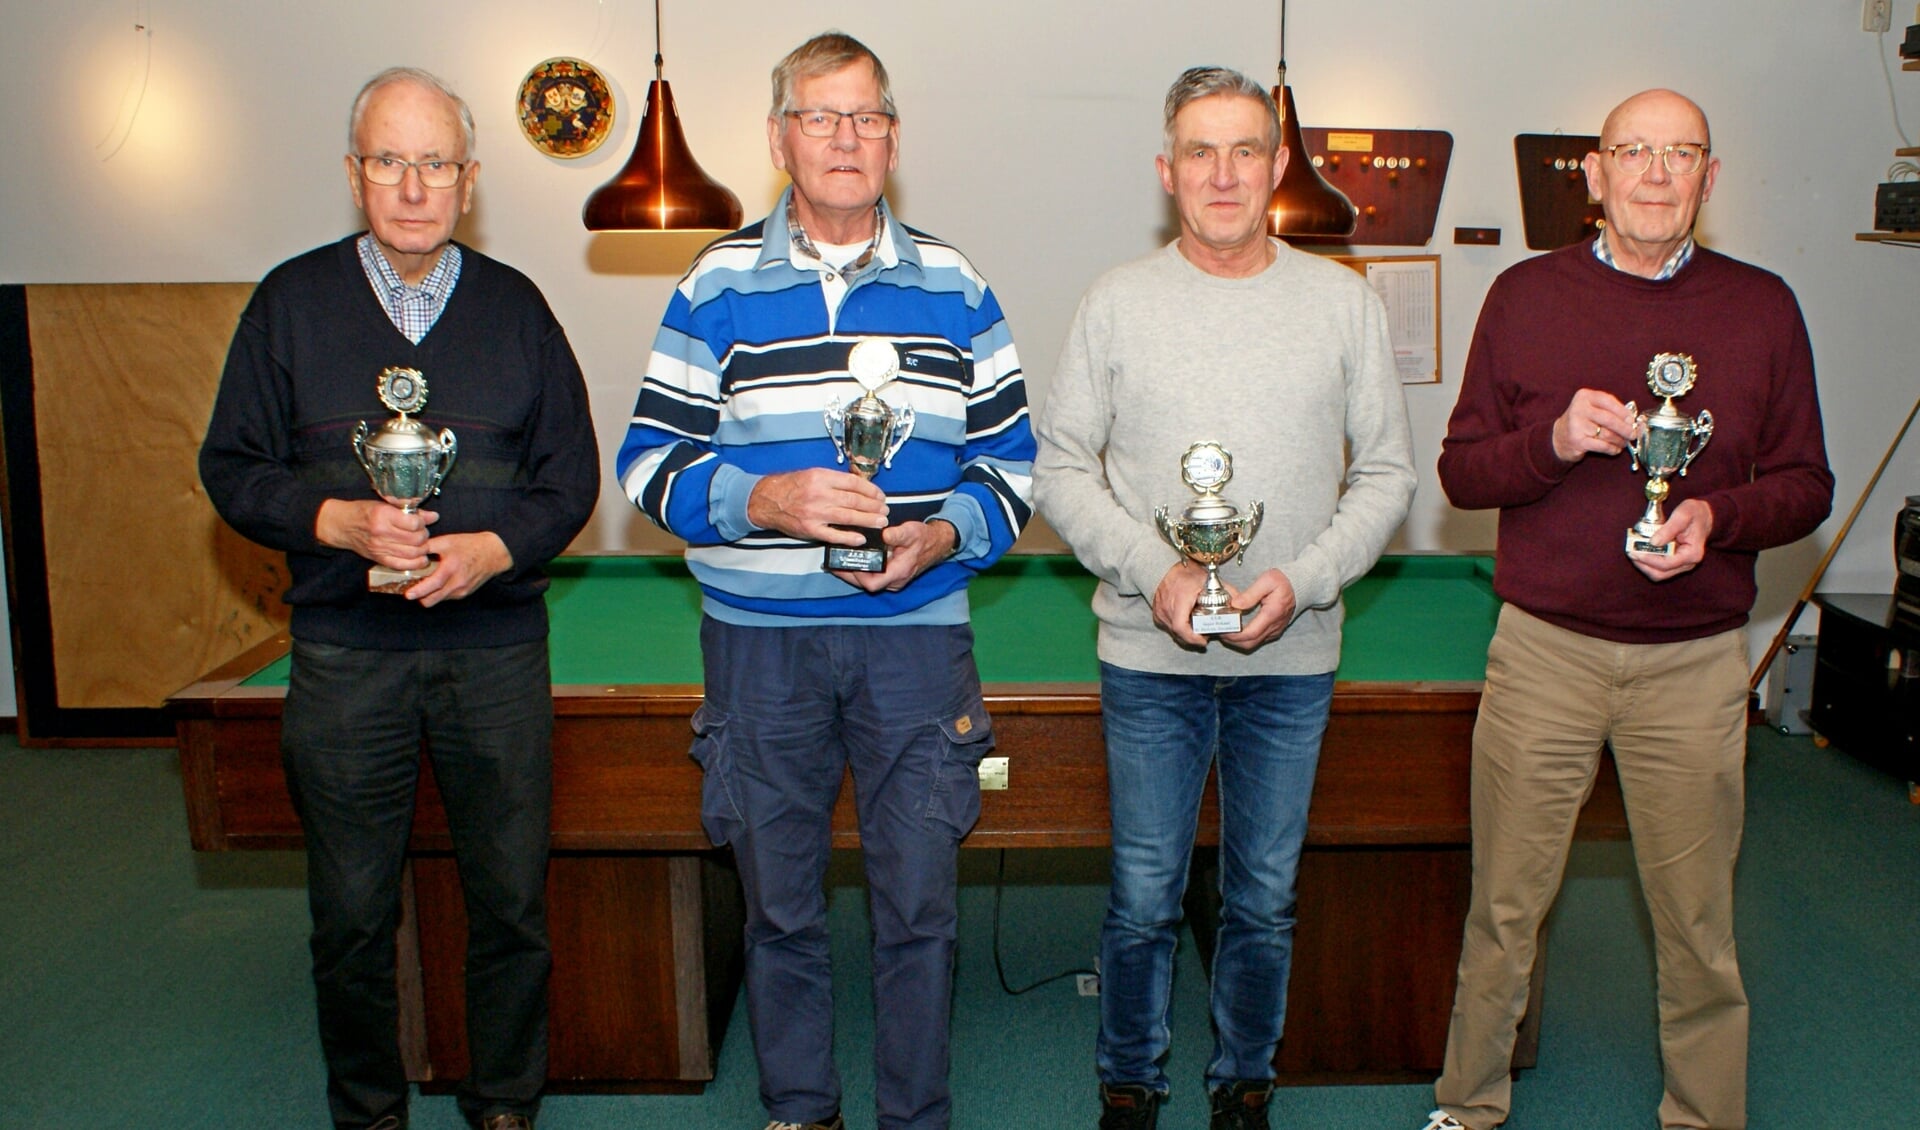 De kampioenen van het biljarten en darten (v.l.n.r.) Jan Oostland, Chris Willemsen, Wim van Haren en Ben Hamer. Foto: Jan Oostland